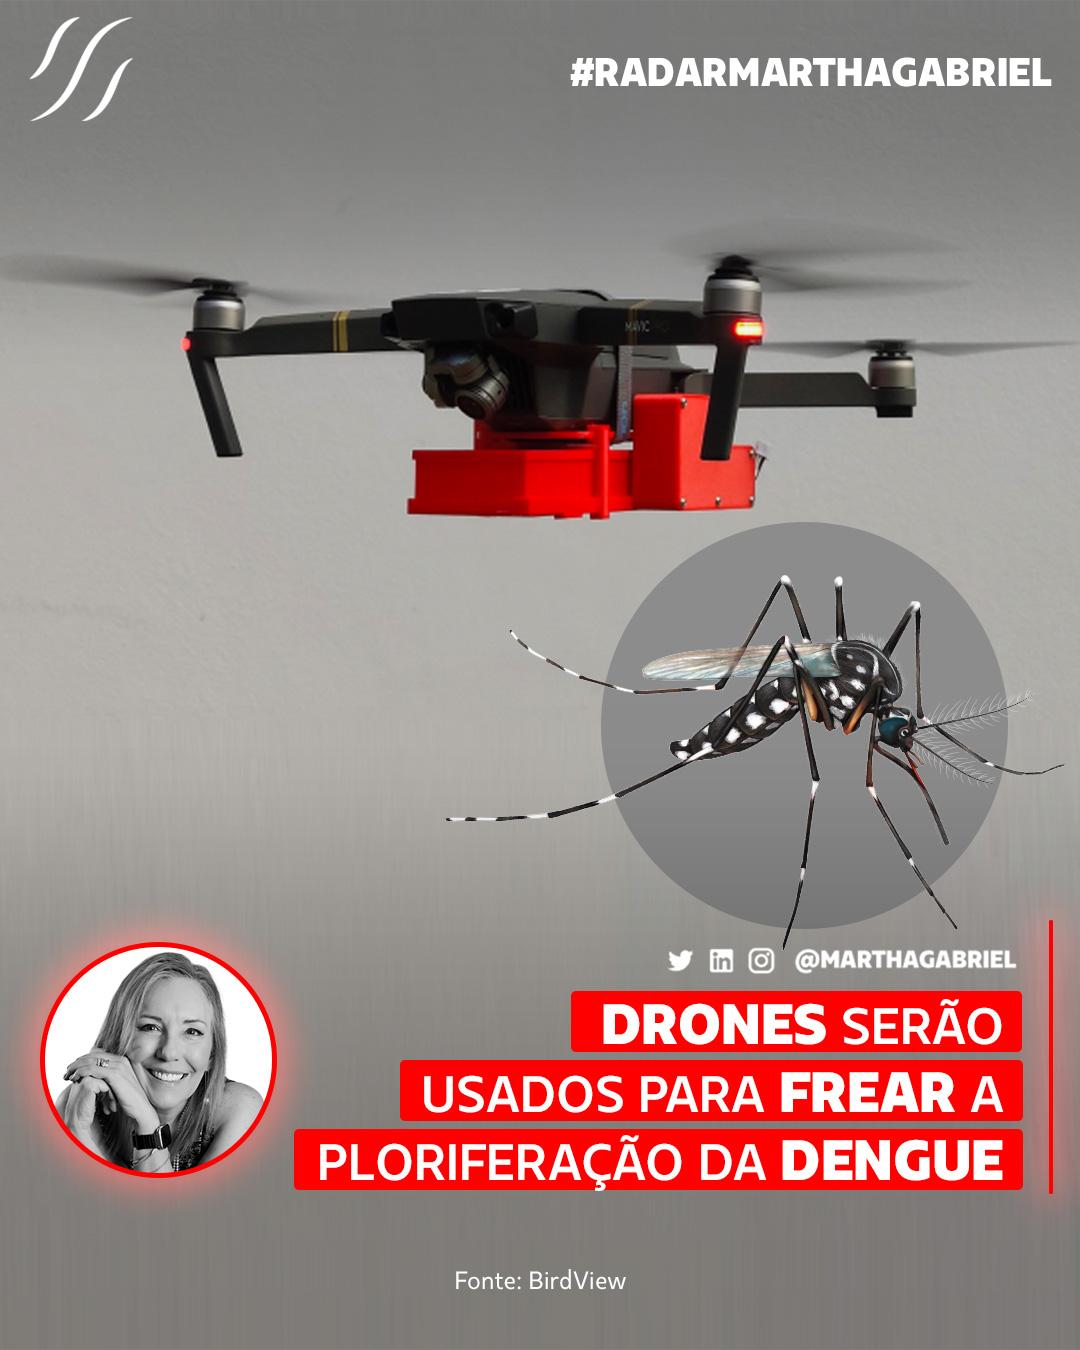 Drones serão usados para frear a ploriferação da dengue